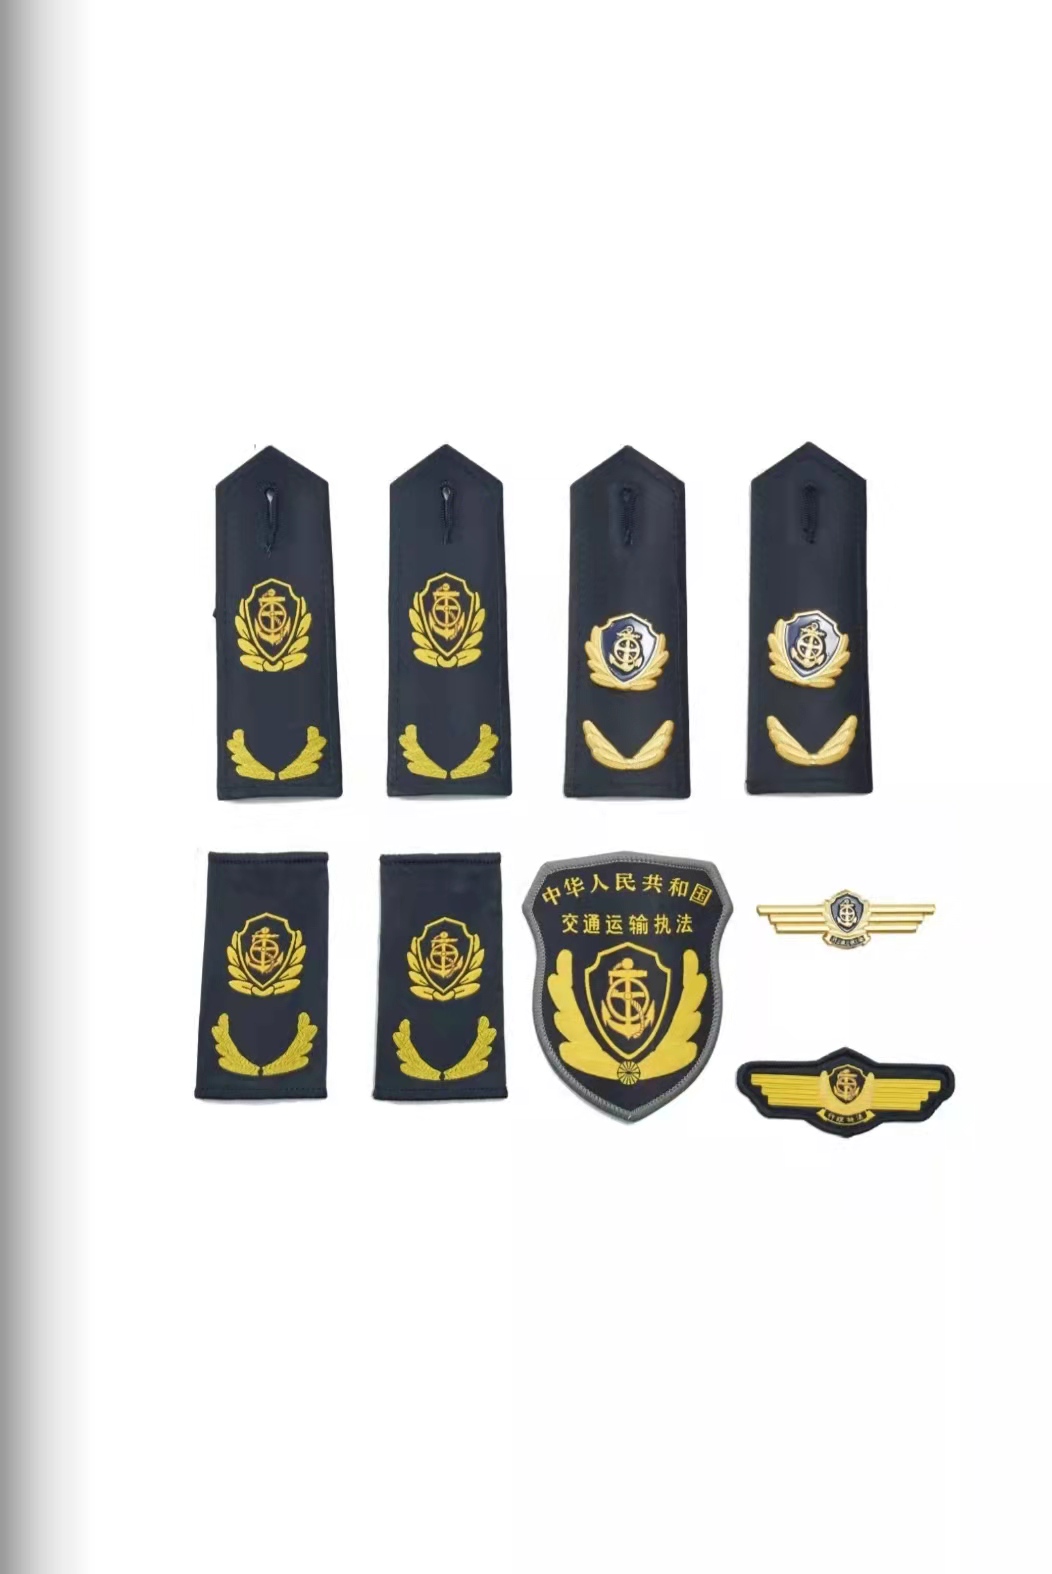 海淀六部门统一交通运输执法服装标志